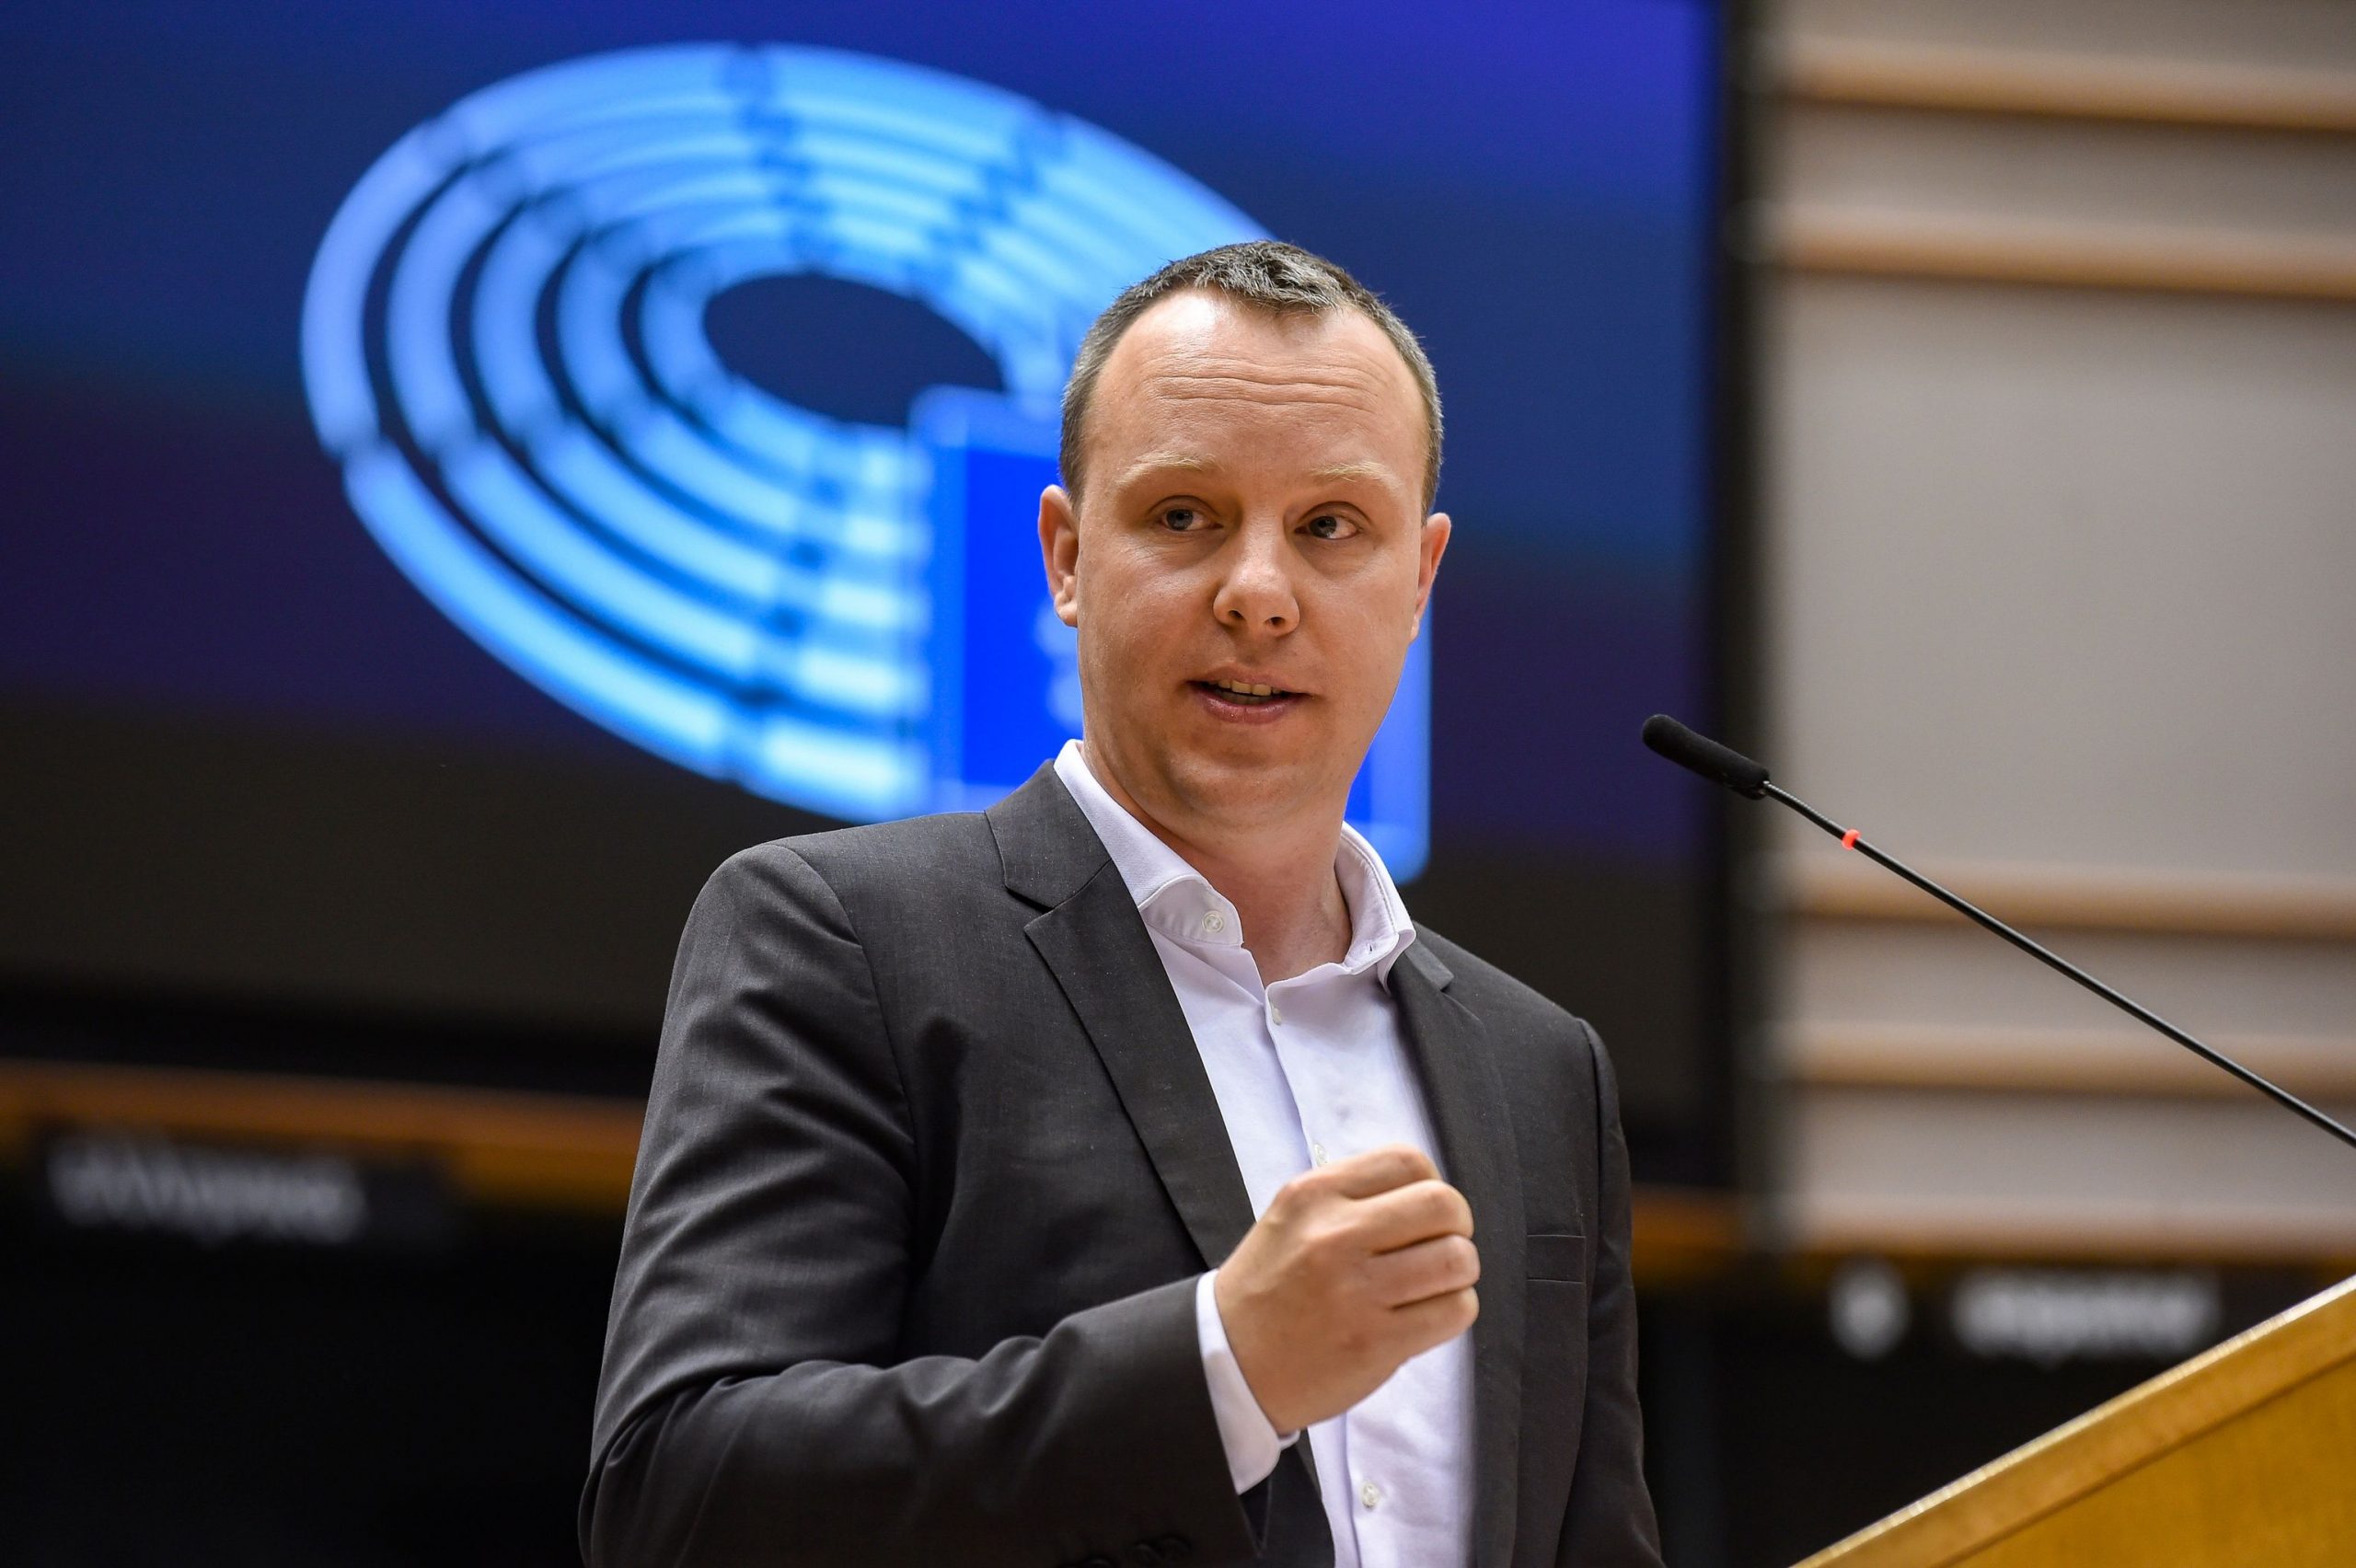 Deutscher Europaabgeordneter im Twitter-Streit mit Wirtschaftsclubpräsident über Ungarn